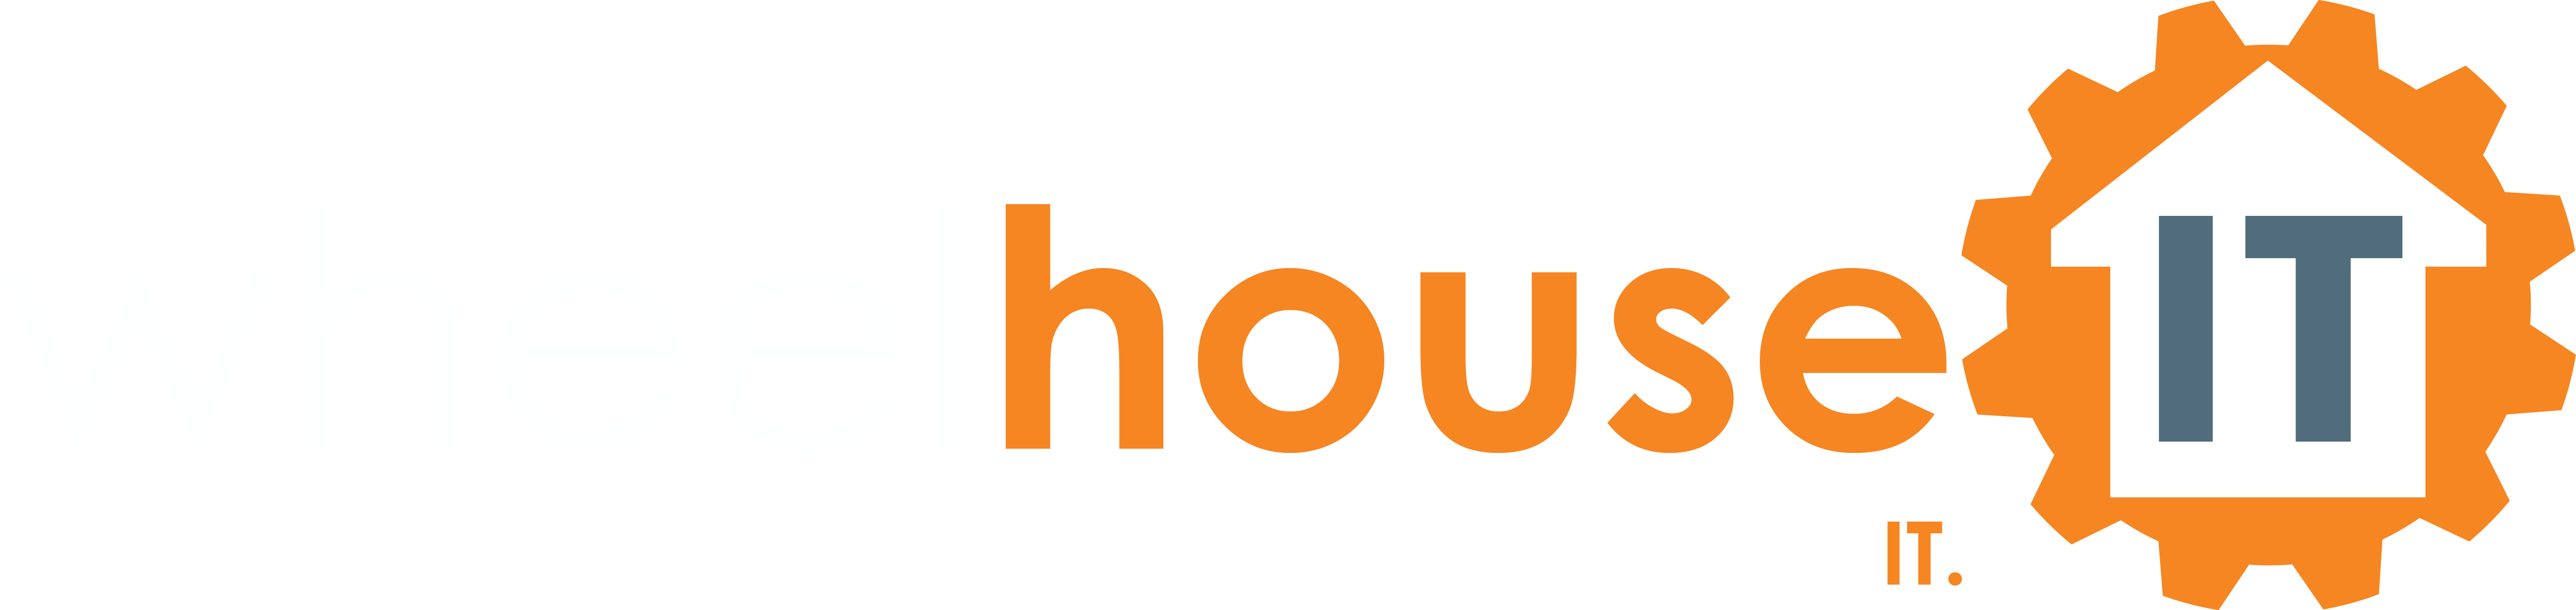 wheelhouse-logo-white